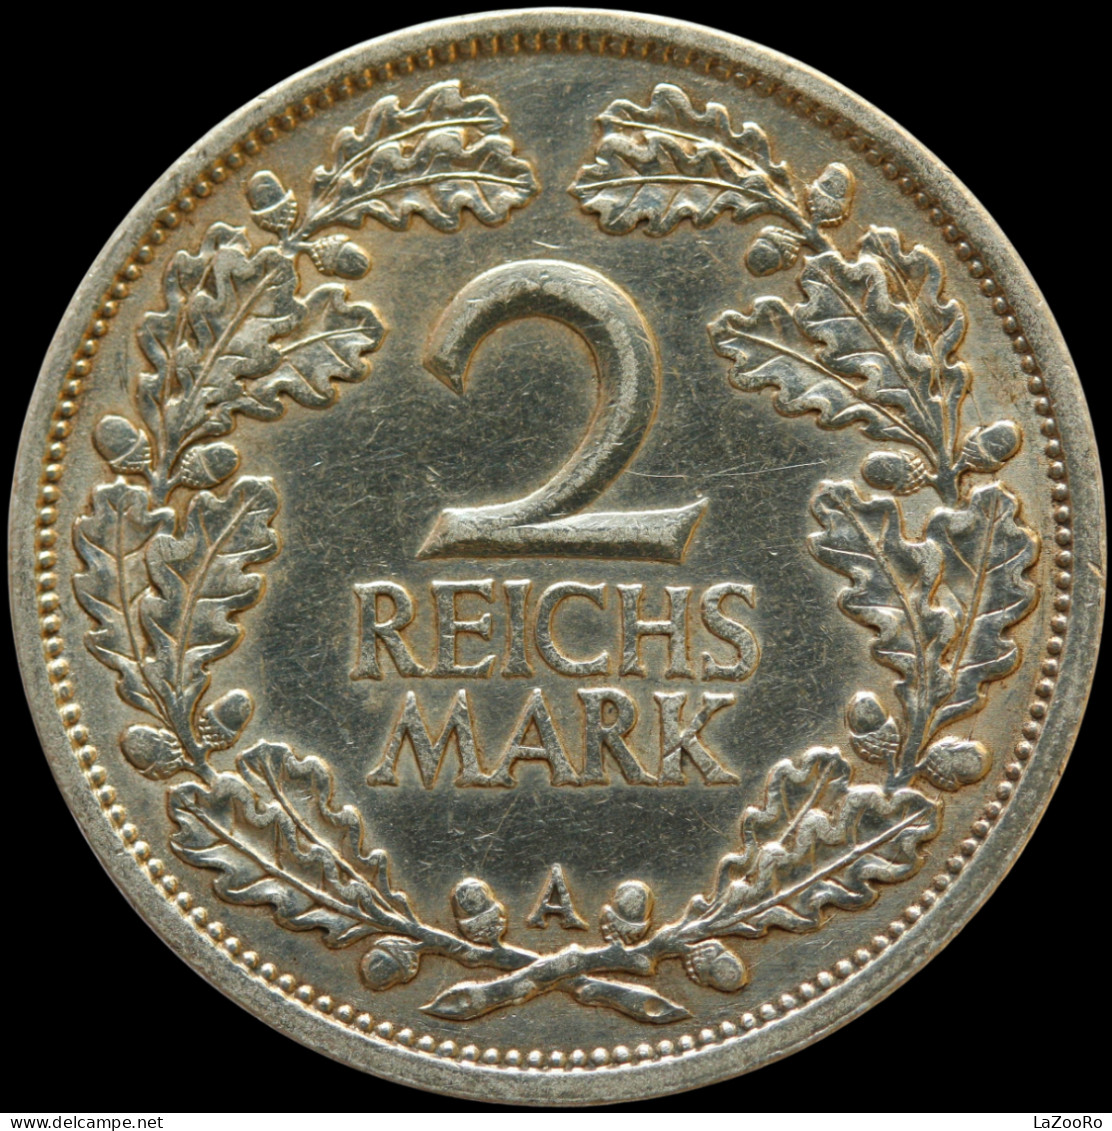 LaZooRo: Germany 2 Mark 1925 A XF Major Die Break - Silver - 2 Reichsmark